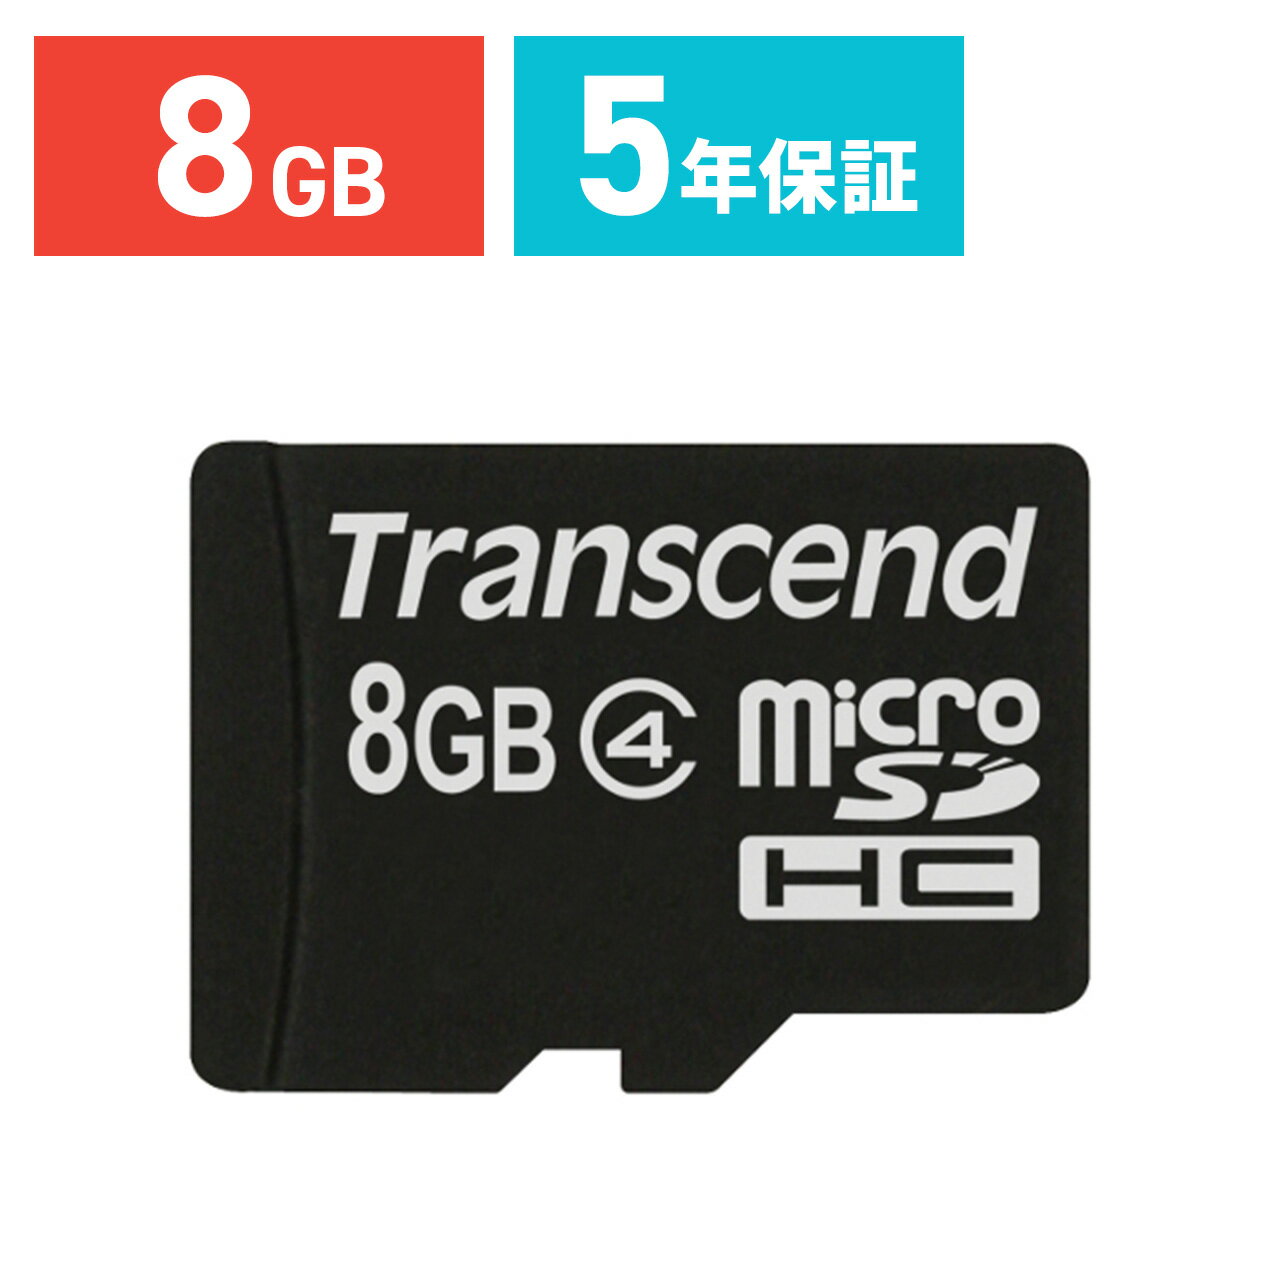 microSDHCカード 8GB Class4 永久保証 マイクロSD Transcend ［TS8GUSDC4］【トランセンド】【全品ポイント10倍〜8/17(金)AM9:59まで】【サンワサプライ直営店】